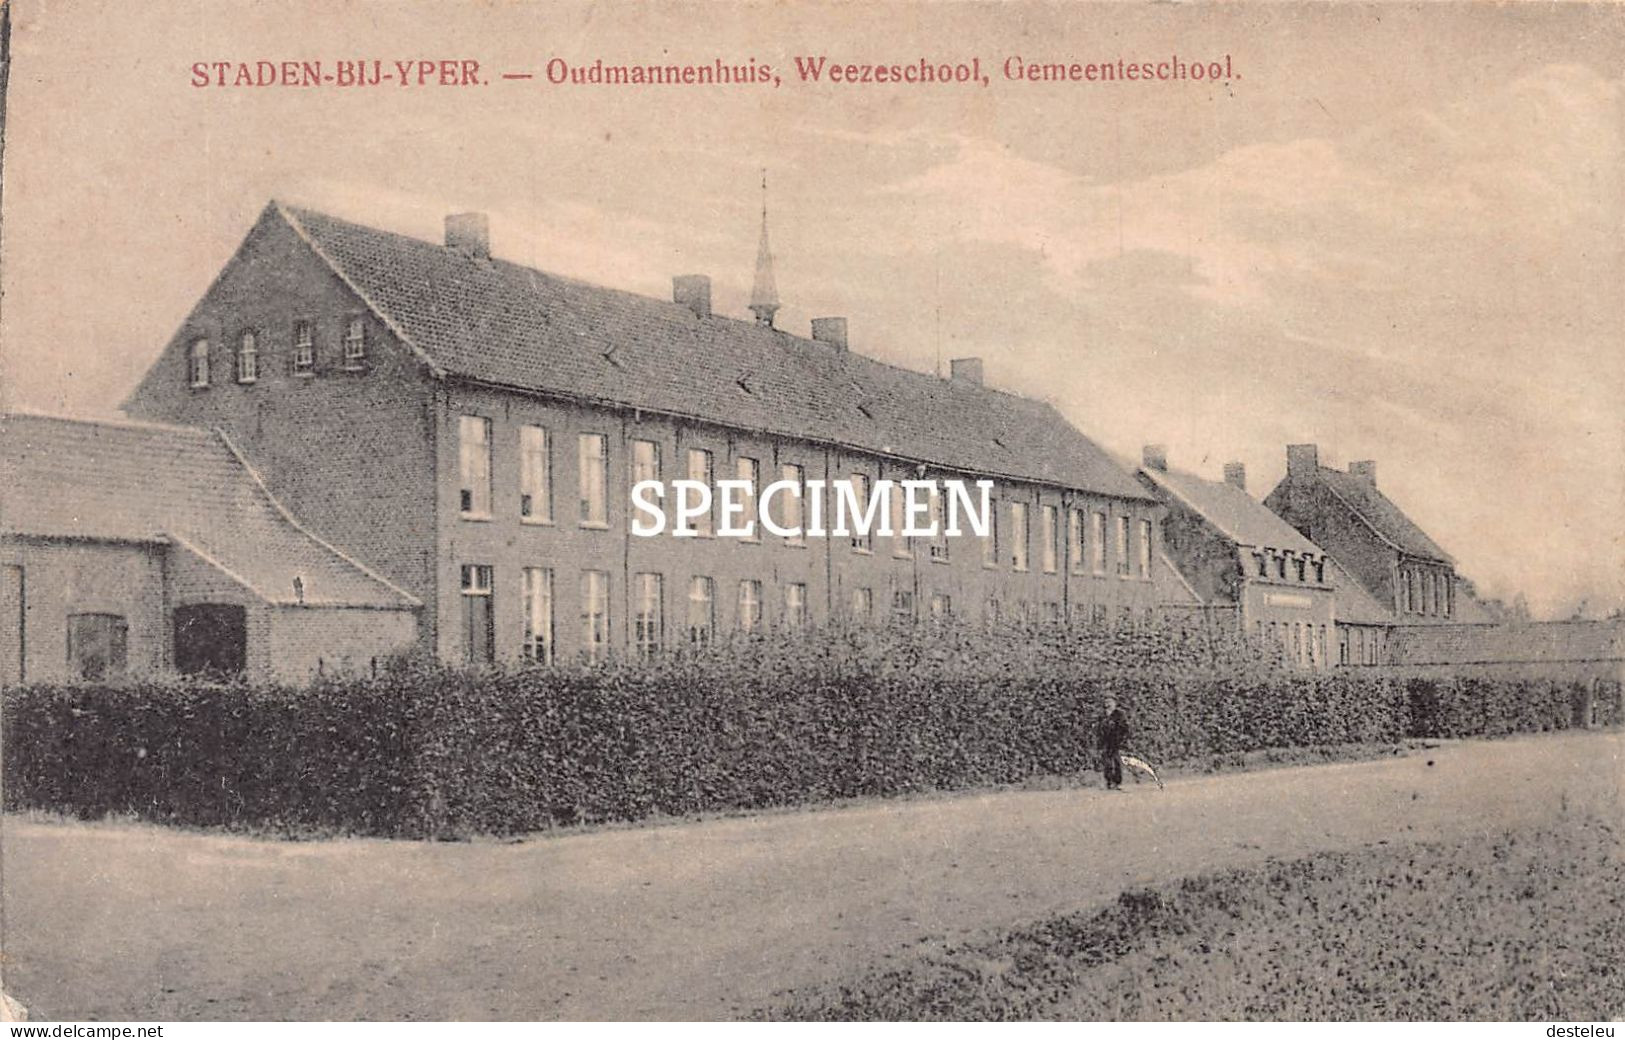 Oudmannenhuis Weezeschool Gemeenteschool - Staden - Staden